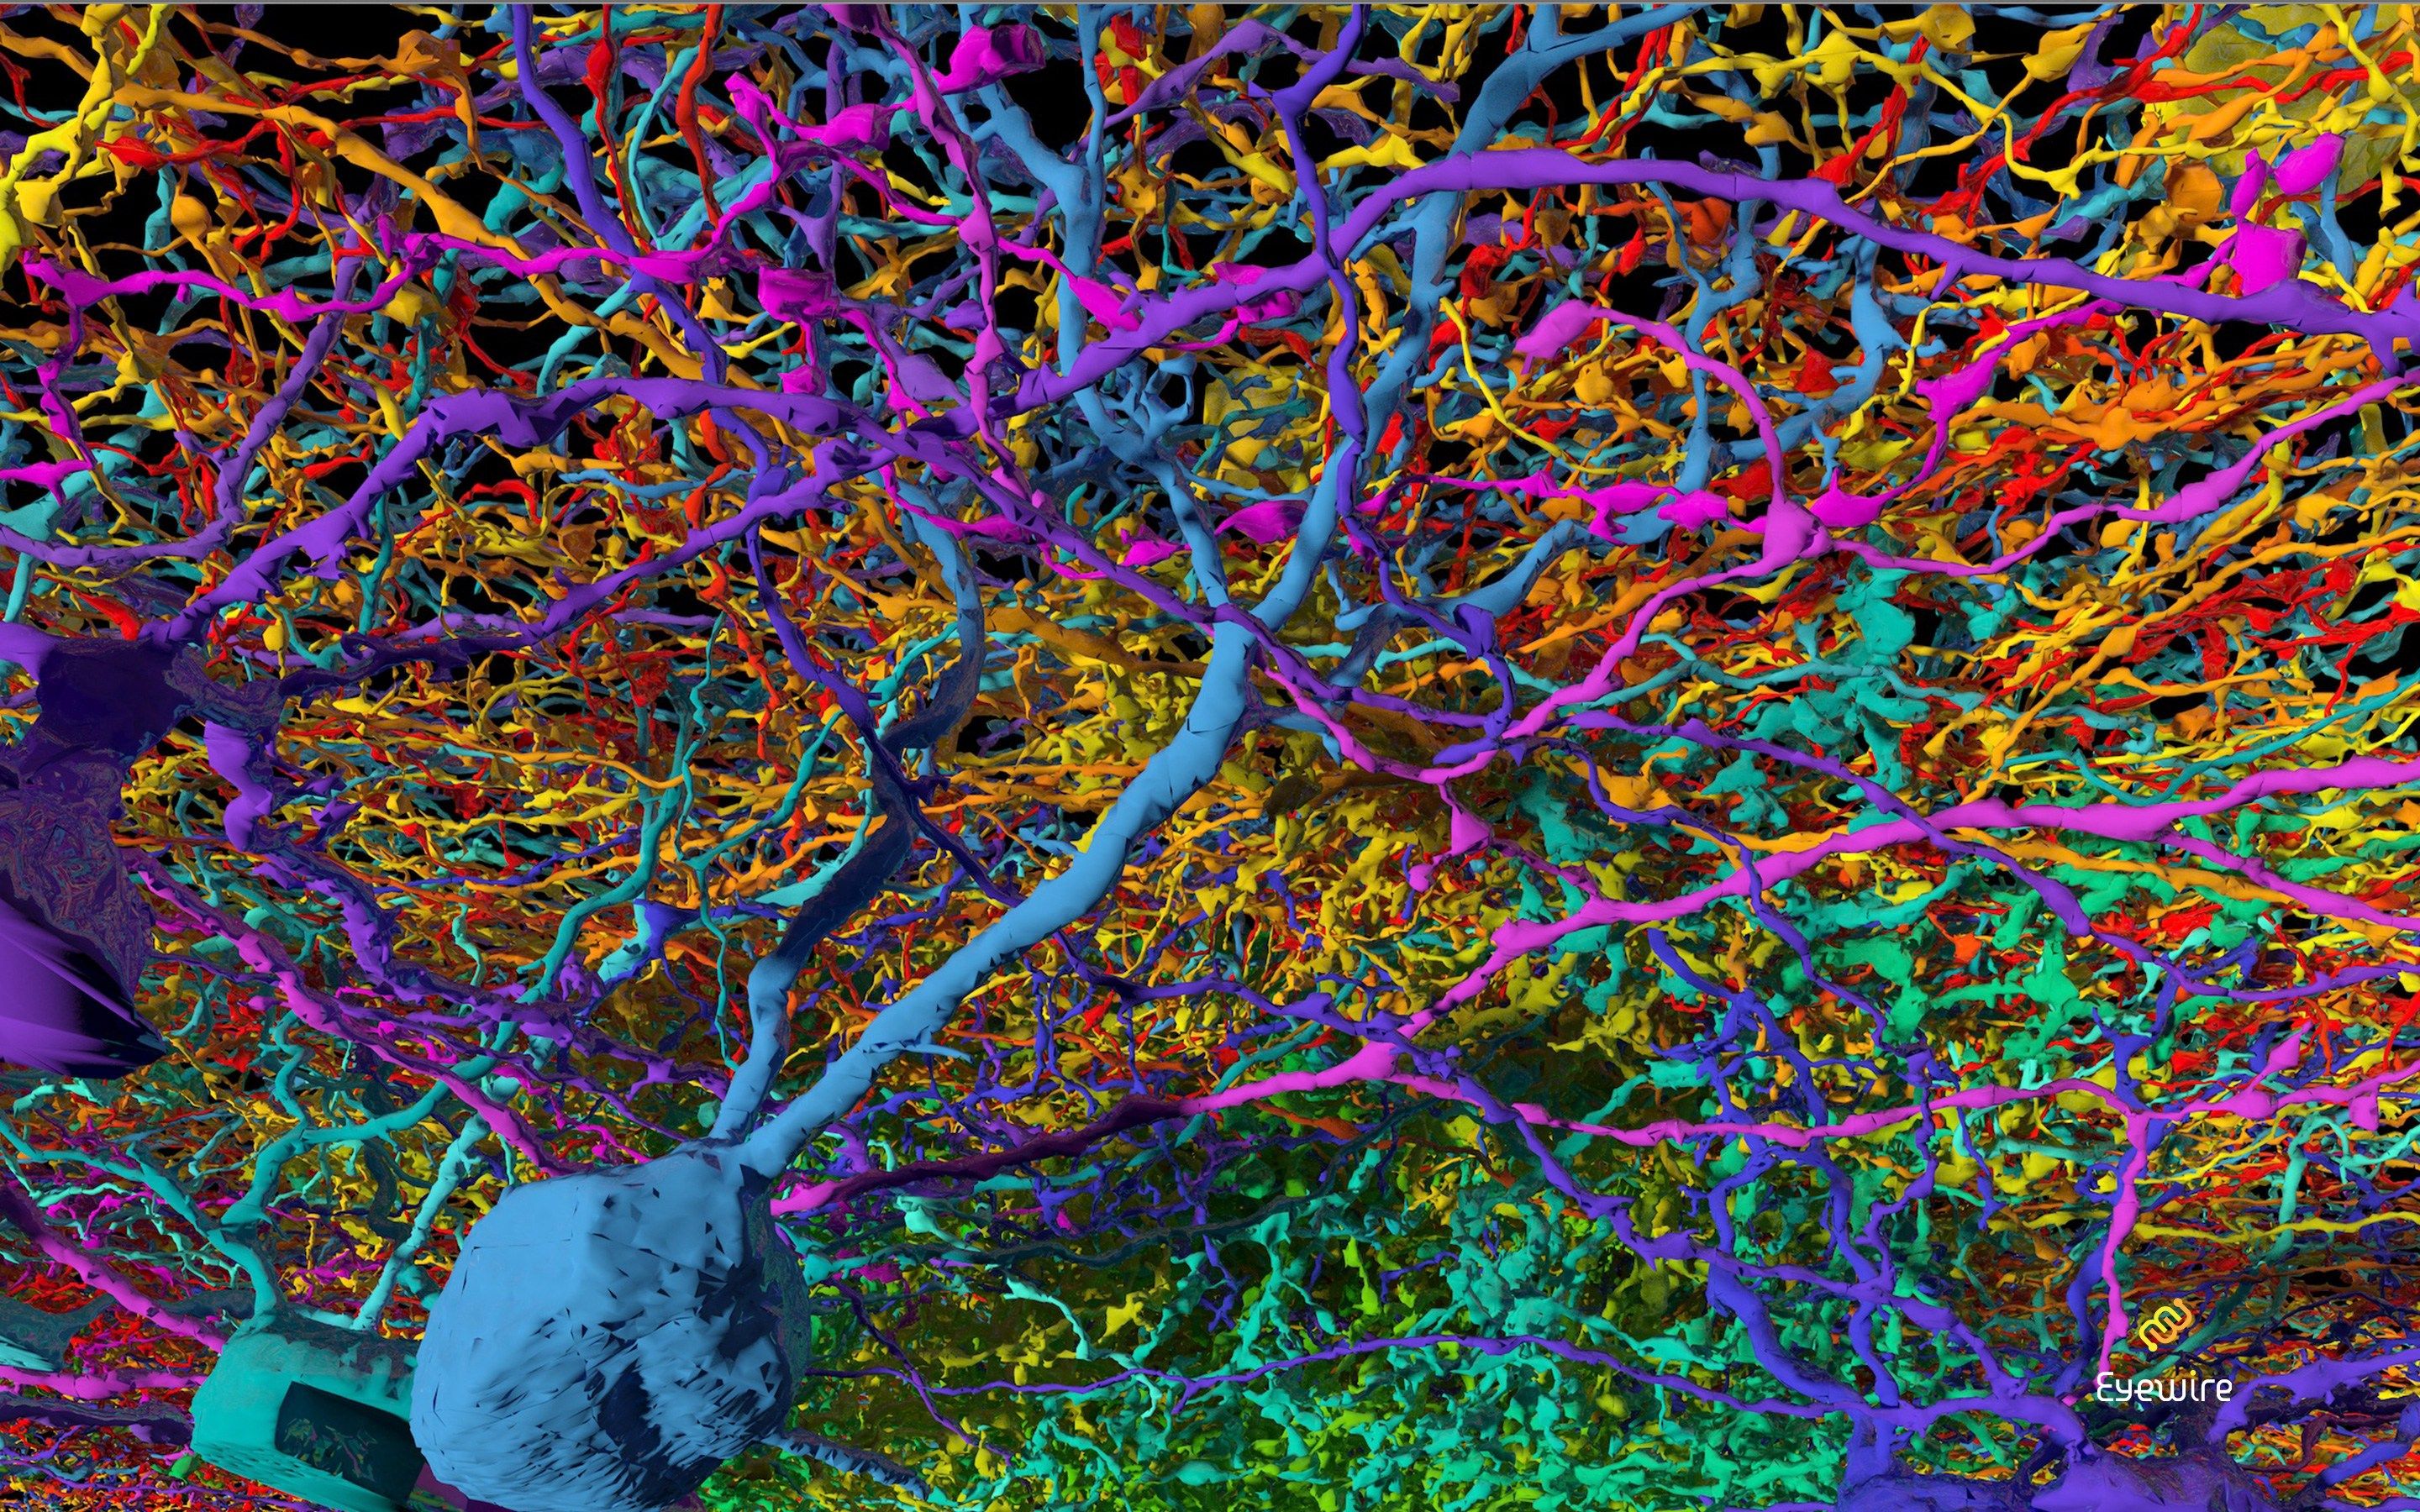 Фотографии нейросетей приложение. Нейрон Пуанкаре микрофотография. Нейронная сеть мозга человека. Нейронная сеть человека под микроскопом. Нейроны мозга под микроскопом.